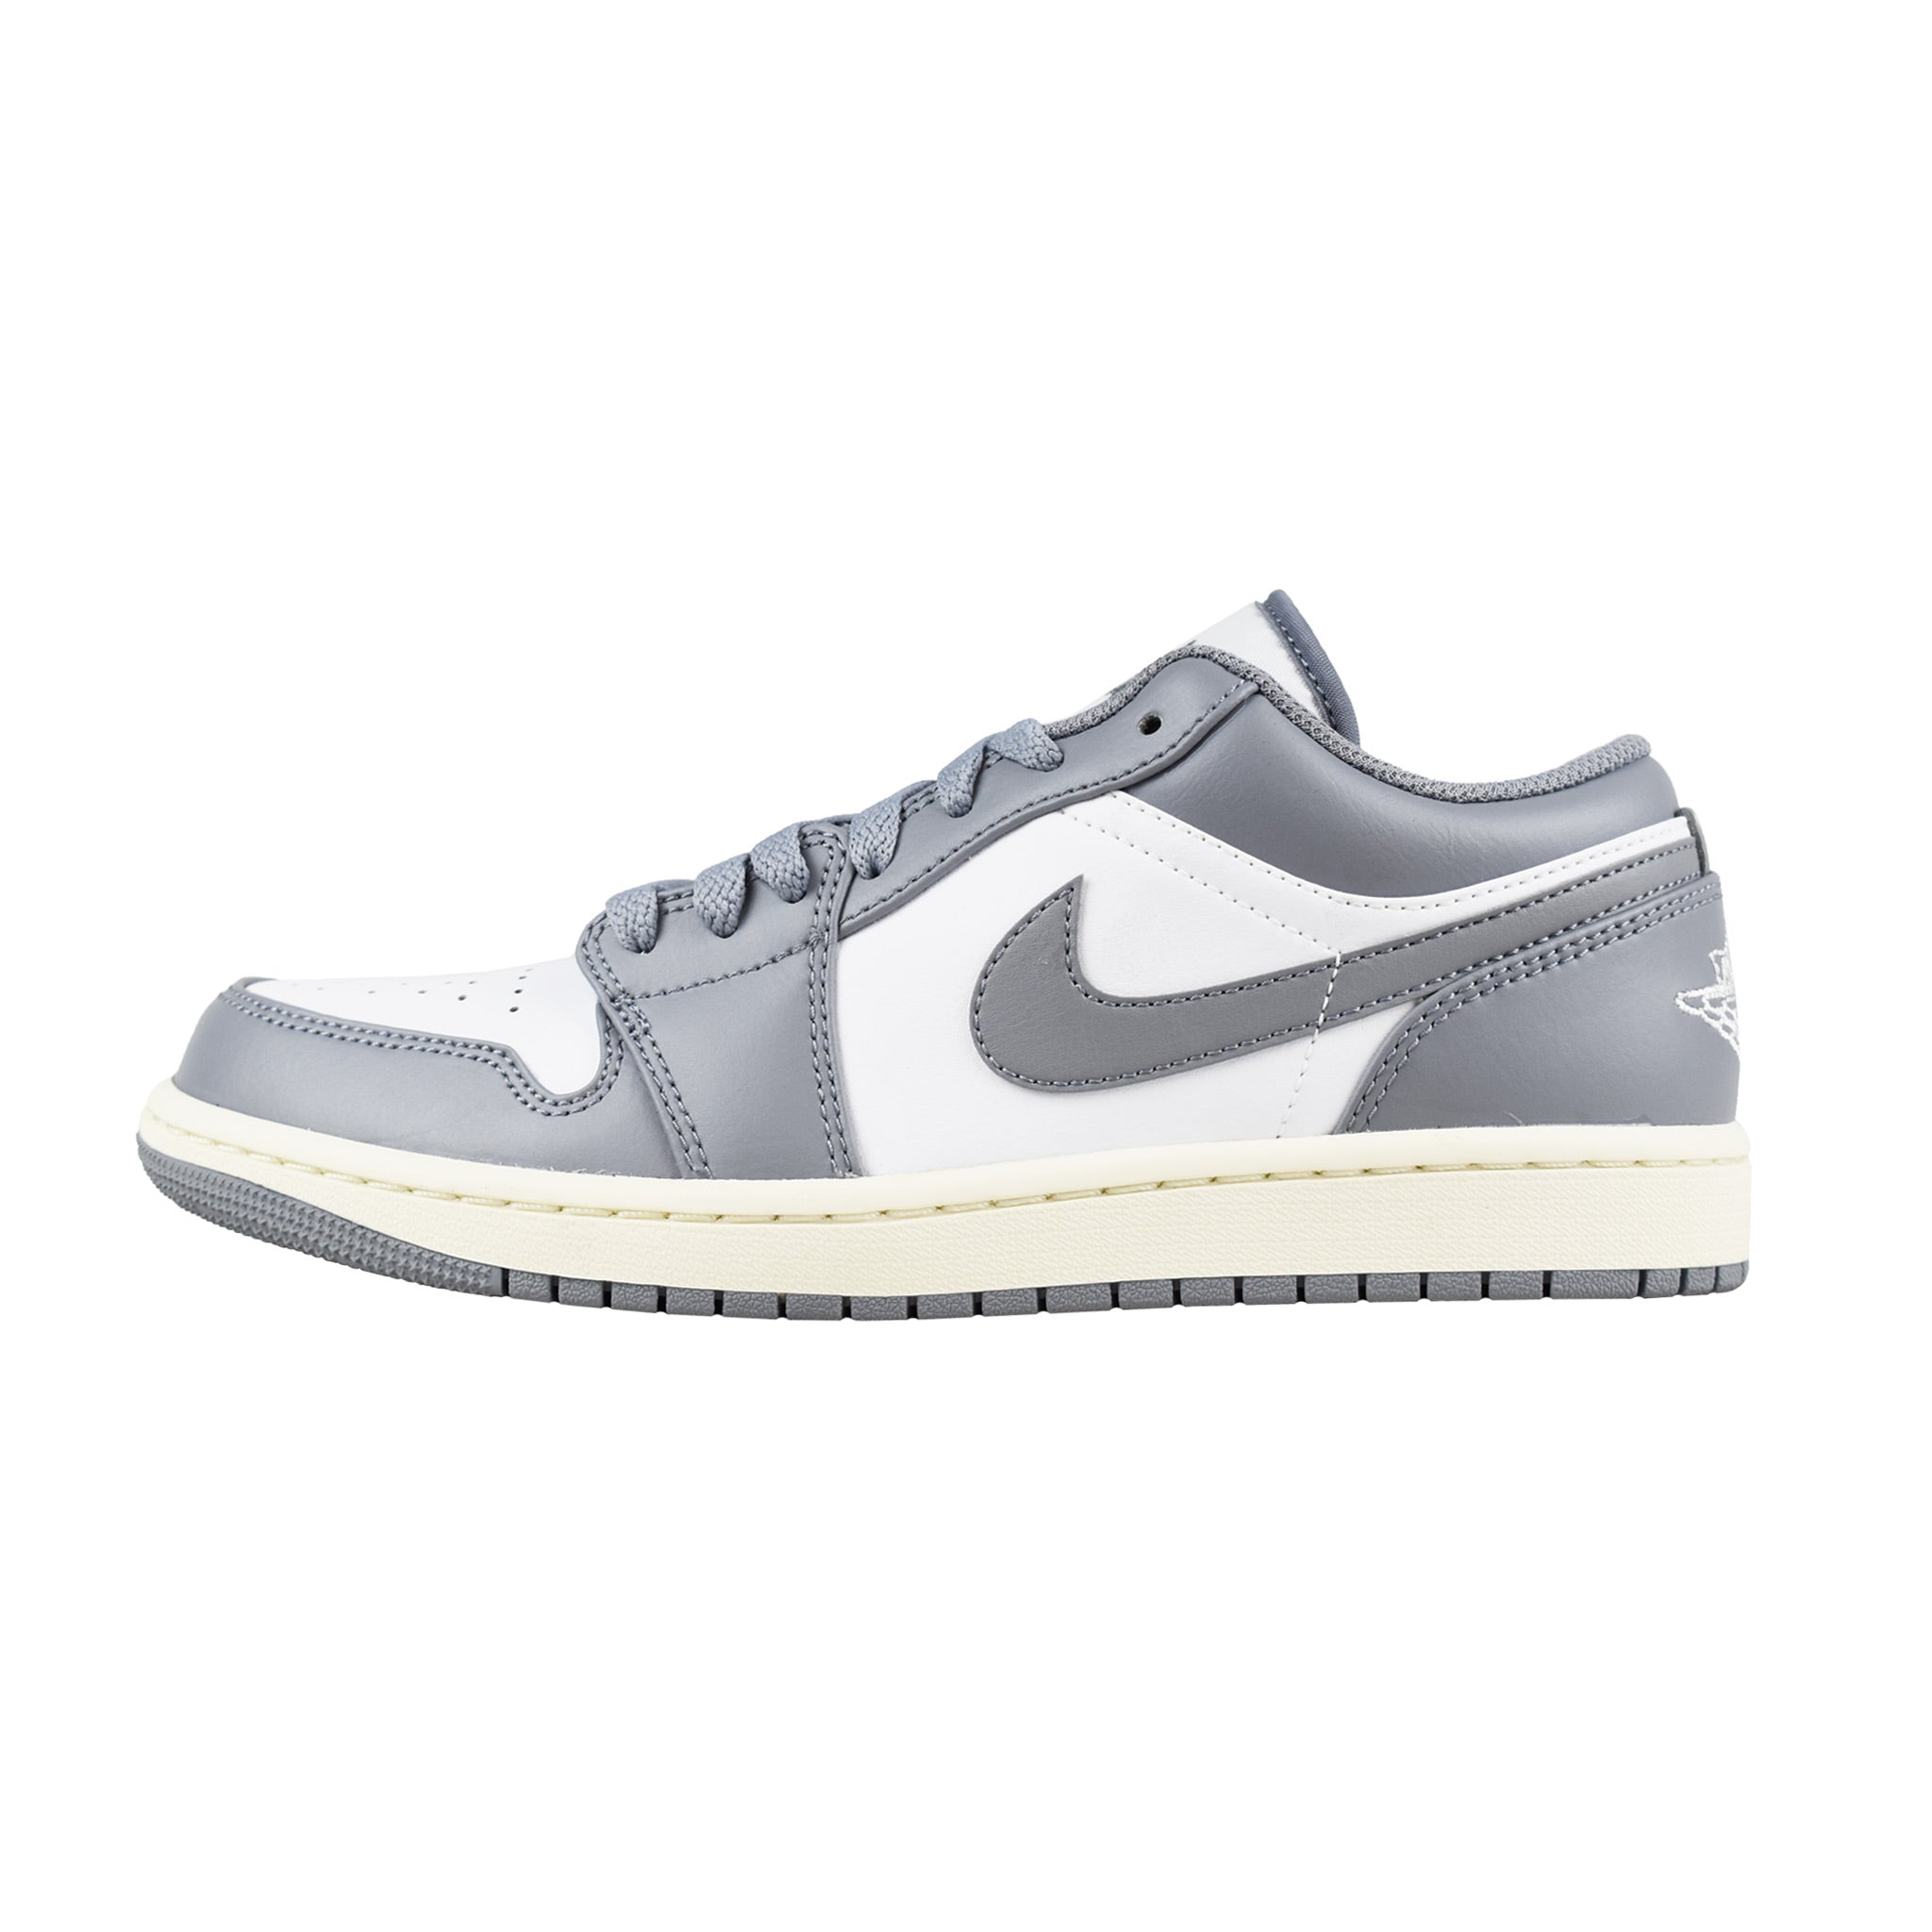 Nike Air Jordan 1 Low - Vintage Grey | Points Streetwear Store | Brisbane